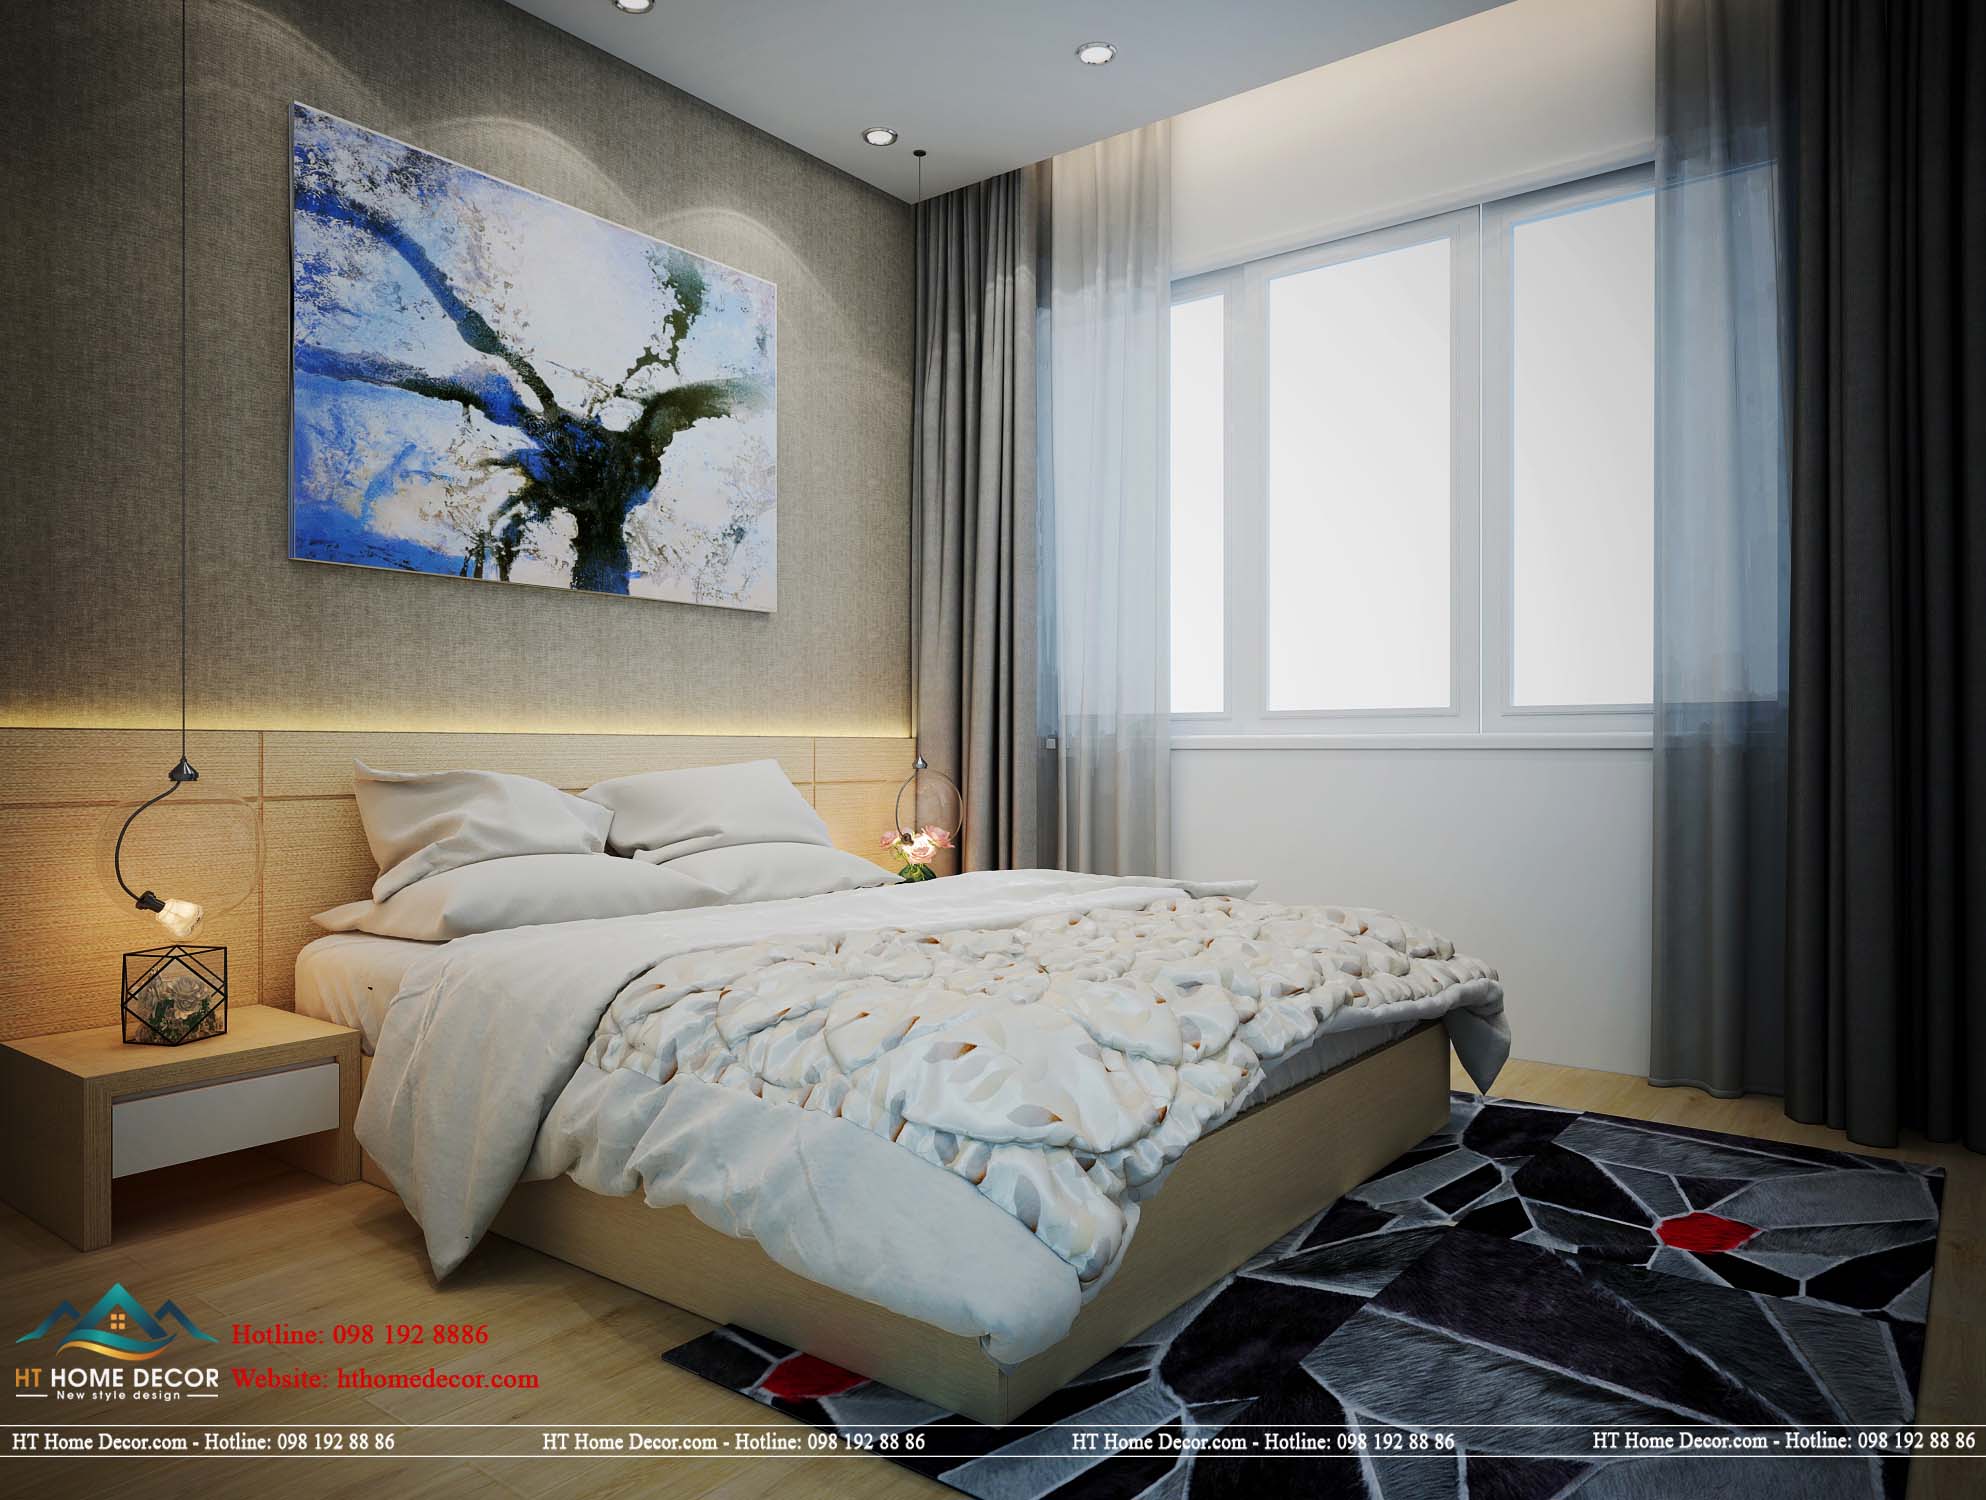 Bức tranh trừu tượng được đặt phía trên giường ngủ, thể hiện được đẳng cấp nghệ thuật của gia chủ.